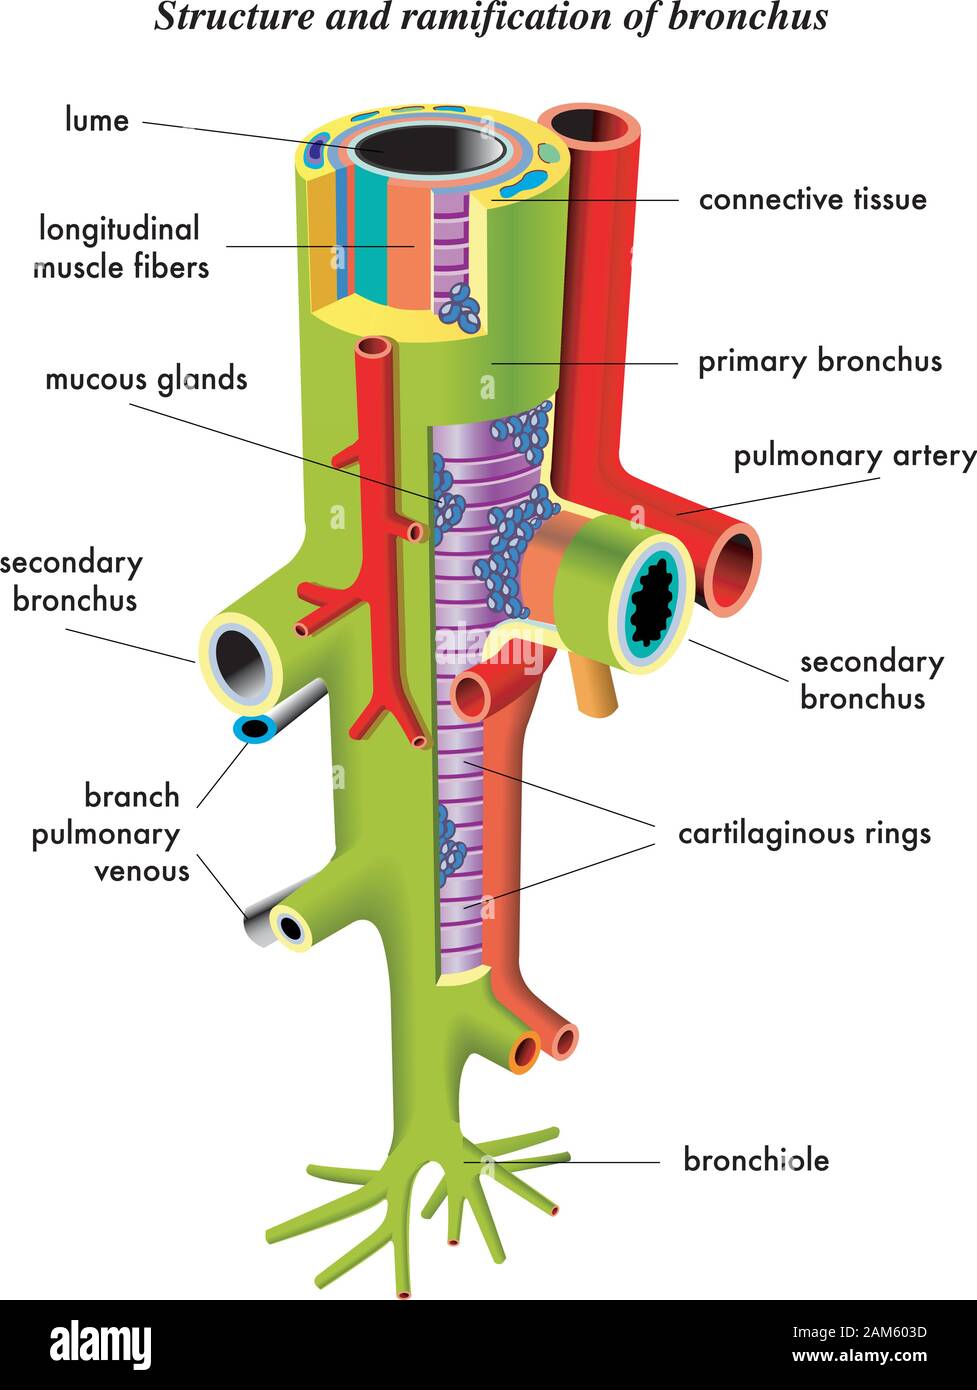 Anatomische Abbildung und Beschreibung des Bronchus. Stock Vektor